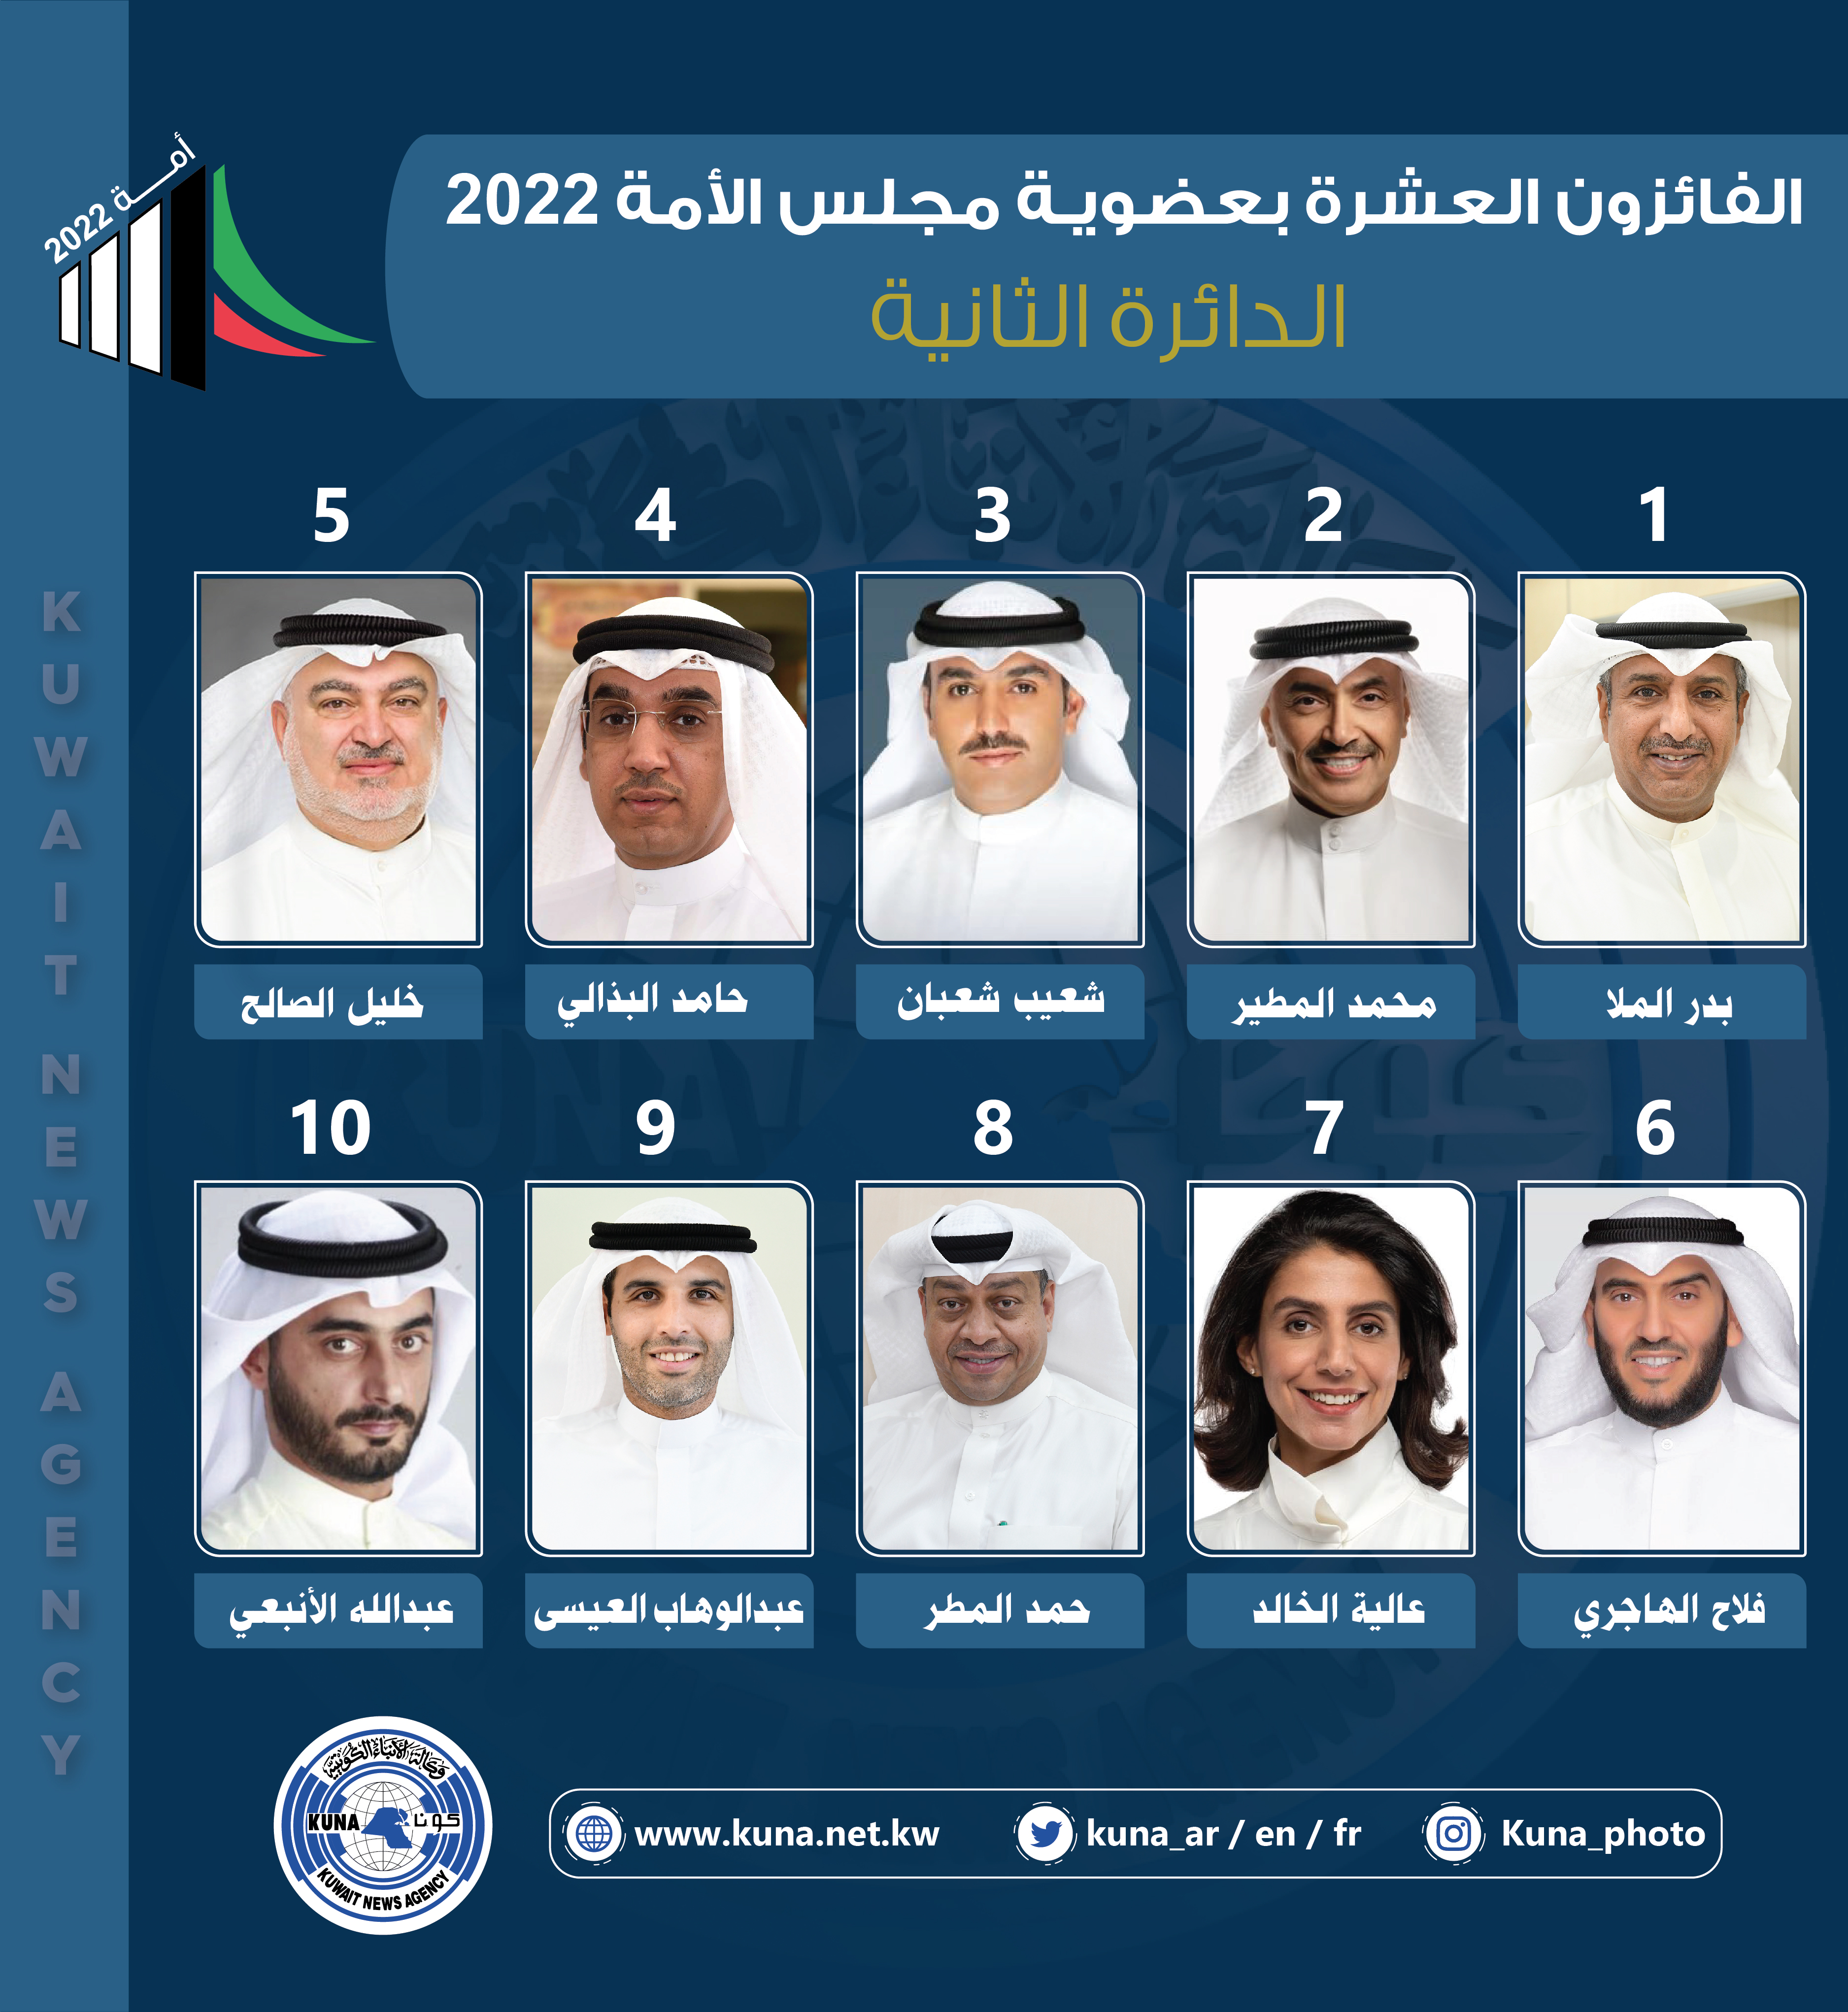 أسماء الفائزين بعضوية مجلس الأمة الكويتي (أمة 2022) عن الدائرة الانتخابية الثانية